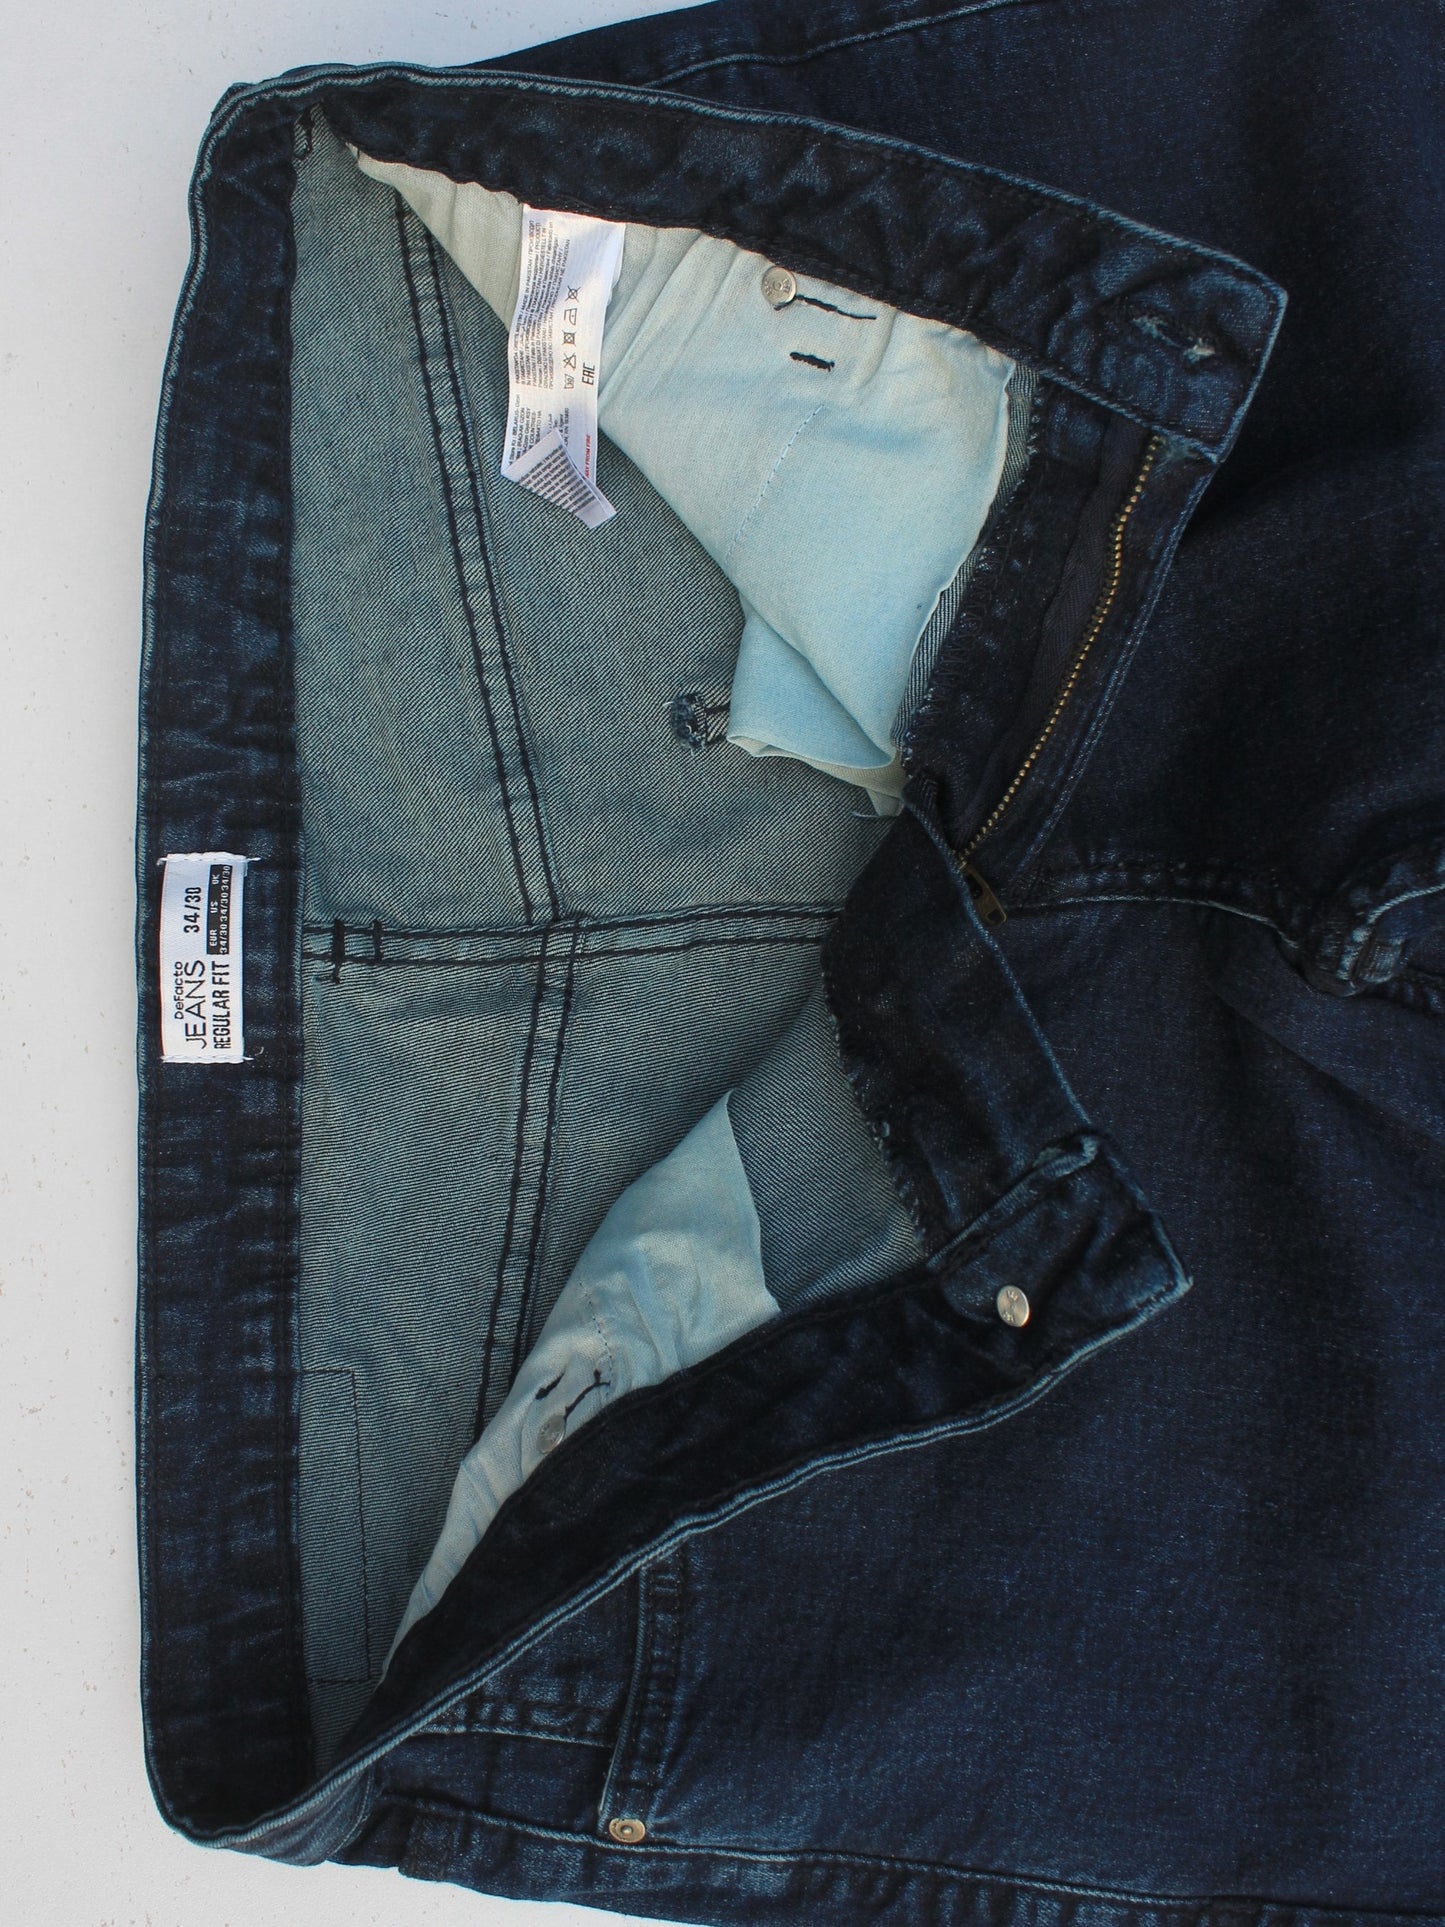 Men's Straight Fit Dark Blue Jean DL4221